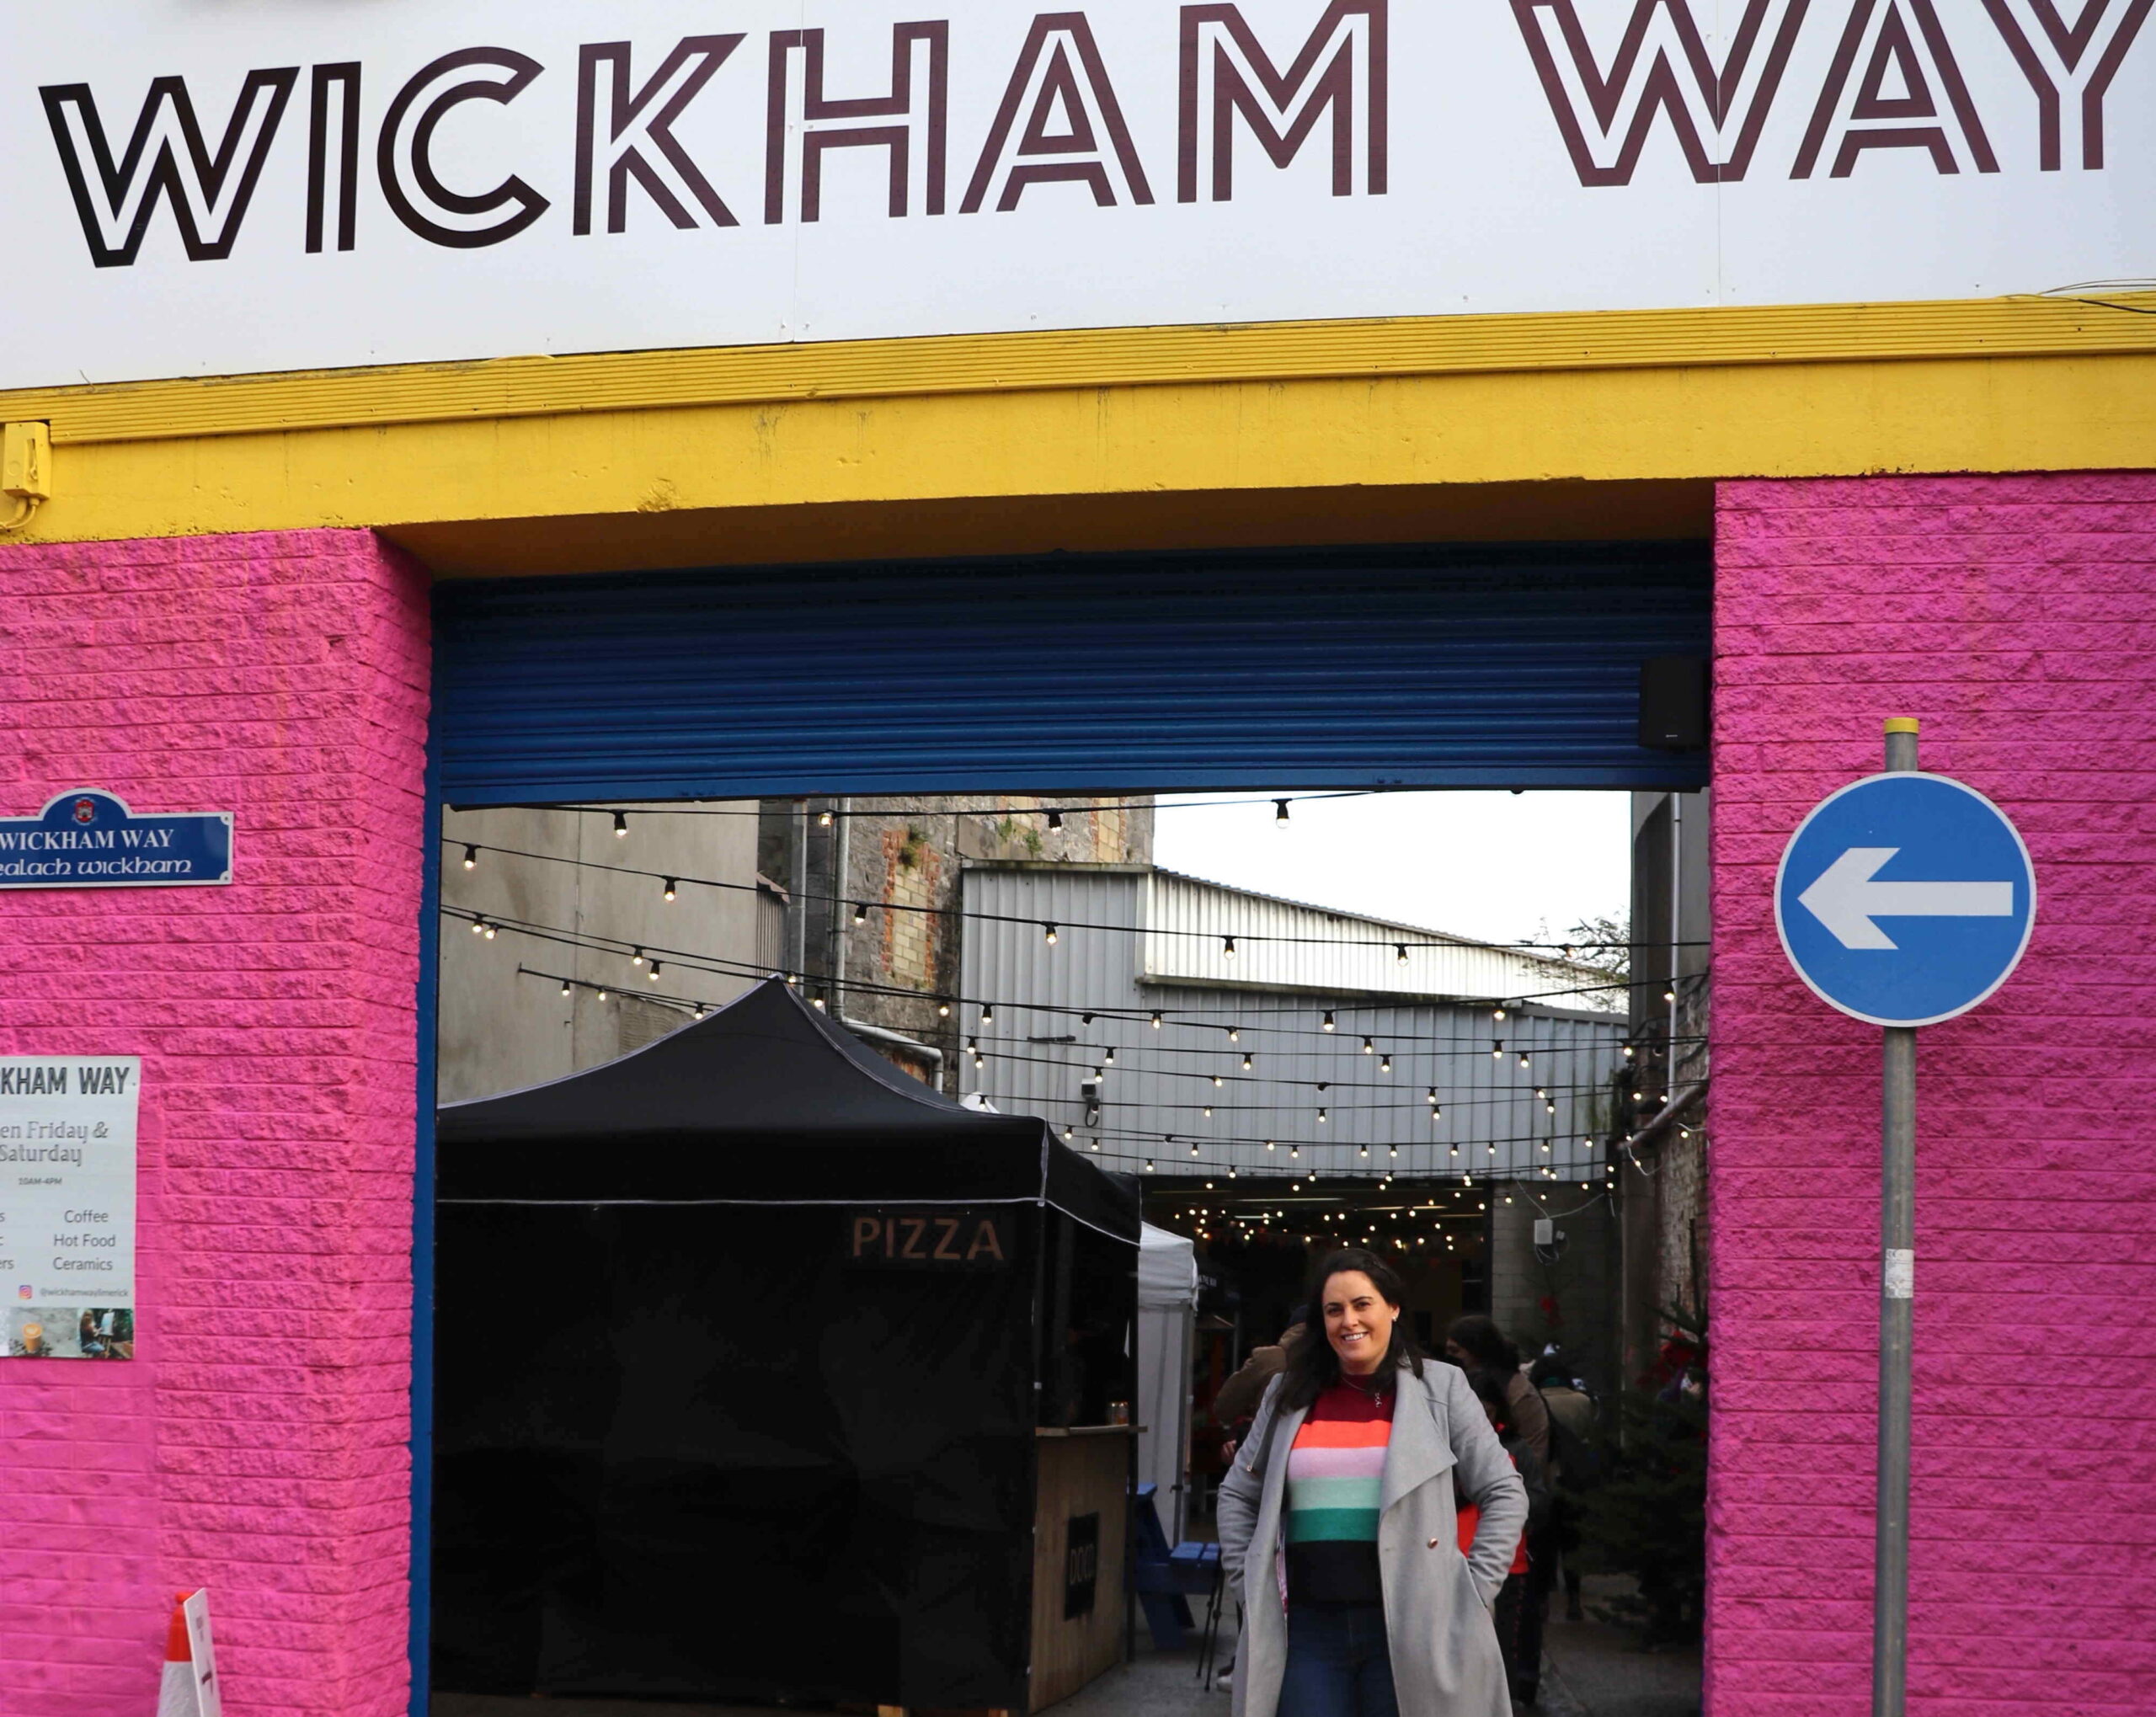 wickham way reopens